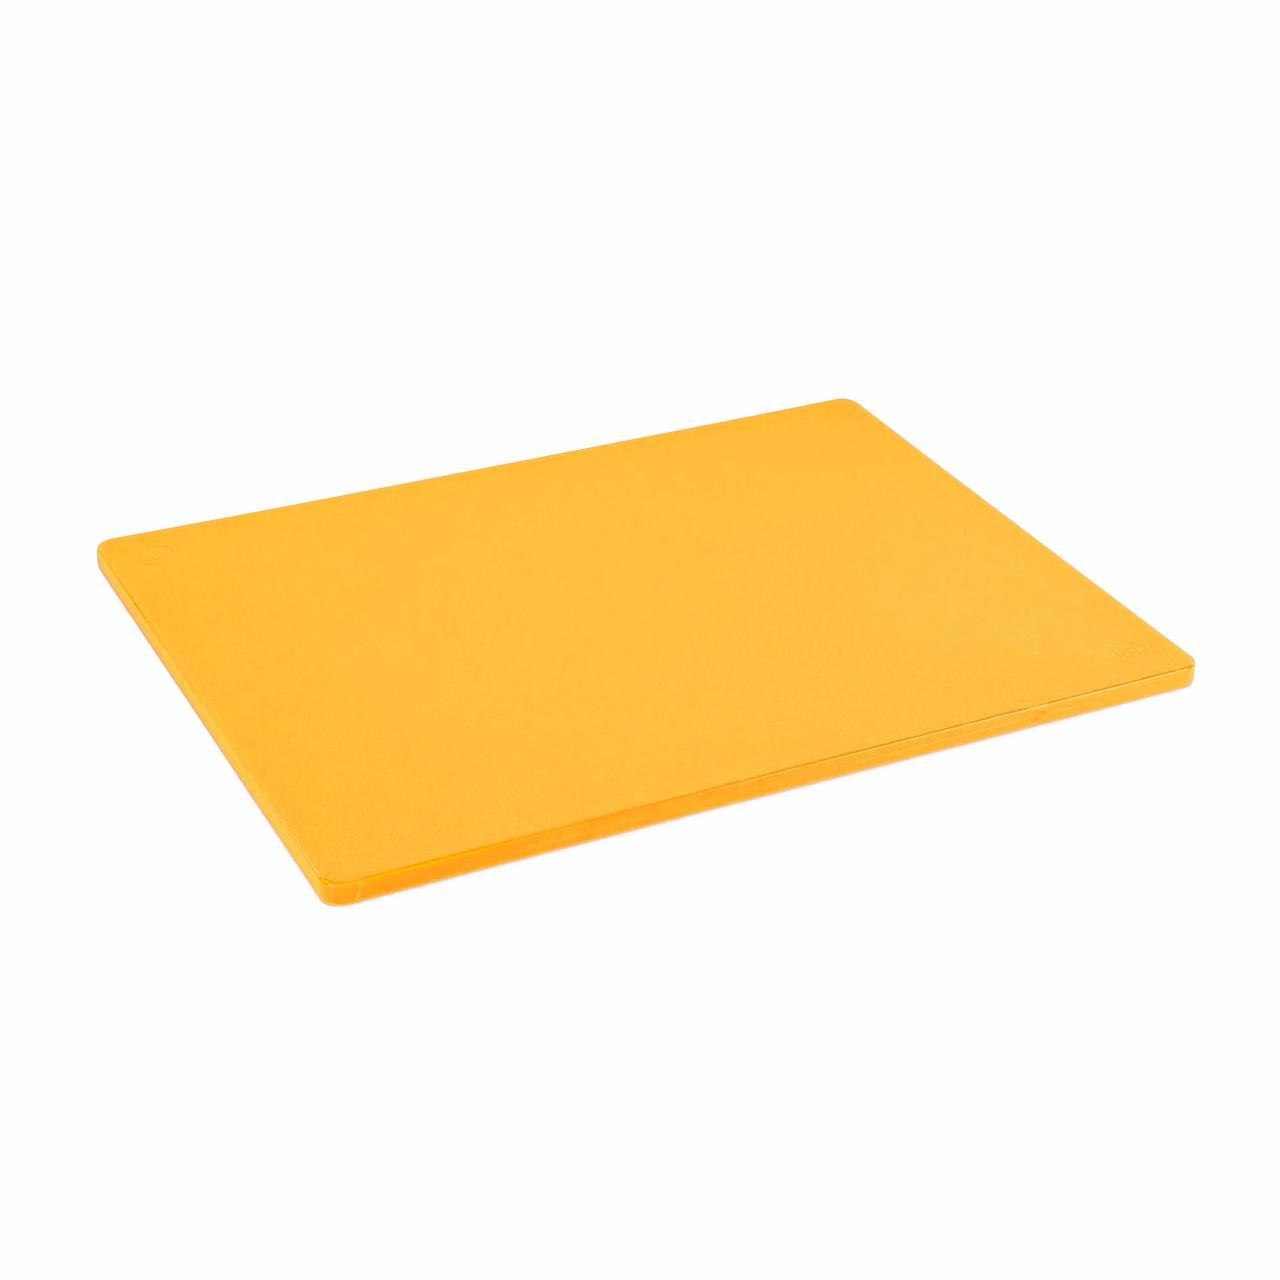 Choice 18 x 12 x 1/2 Yellow Polyethylene Cutting Board